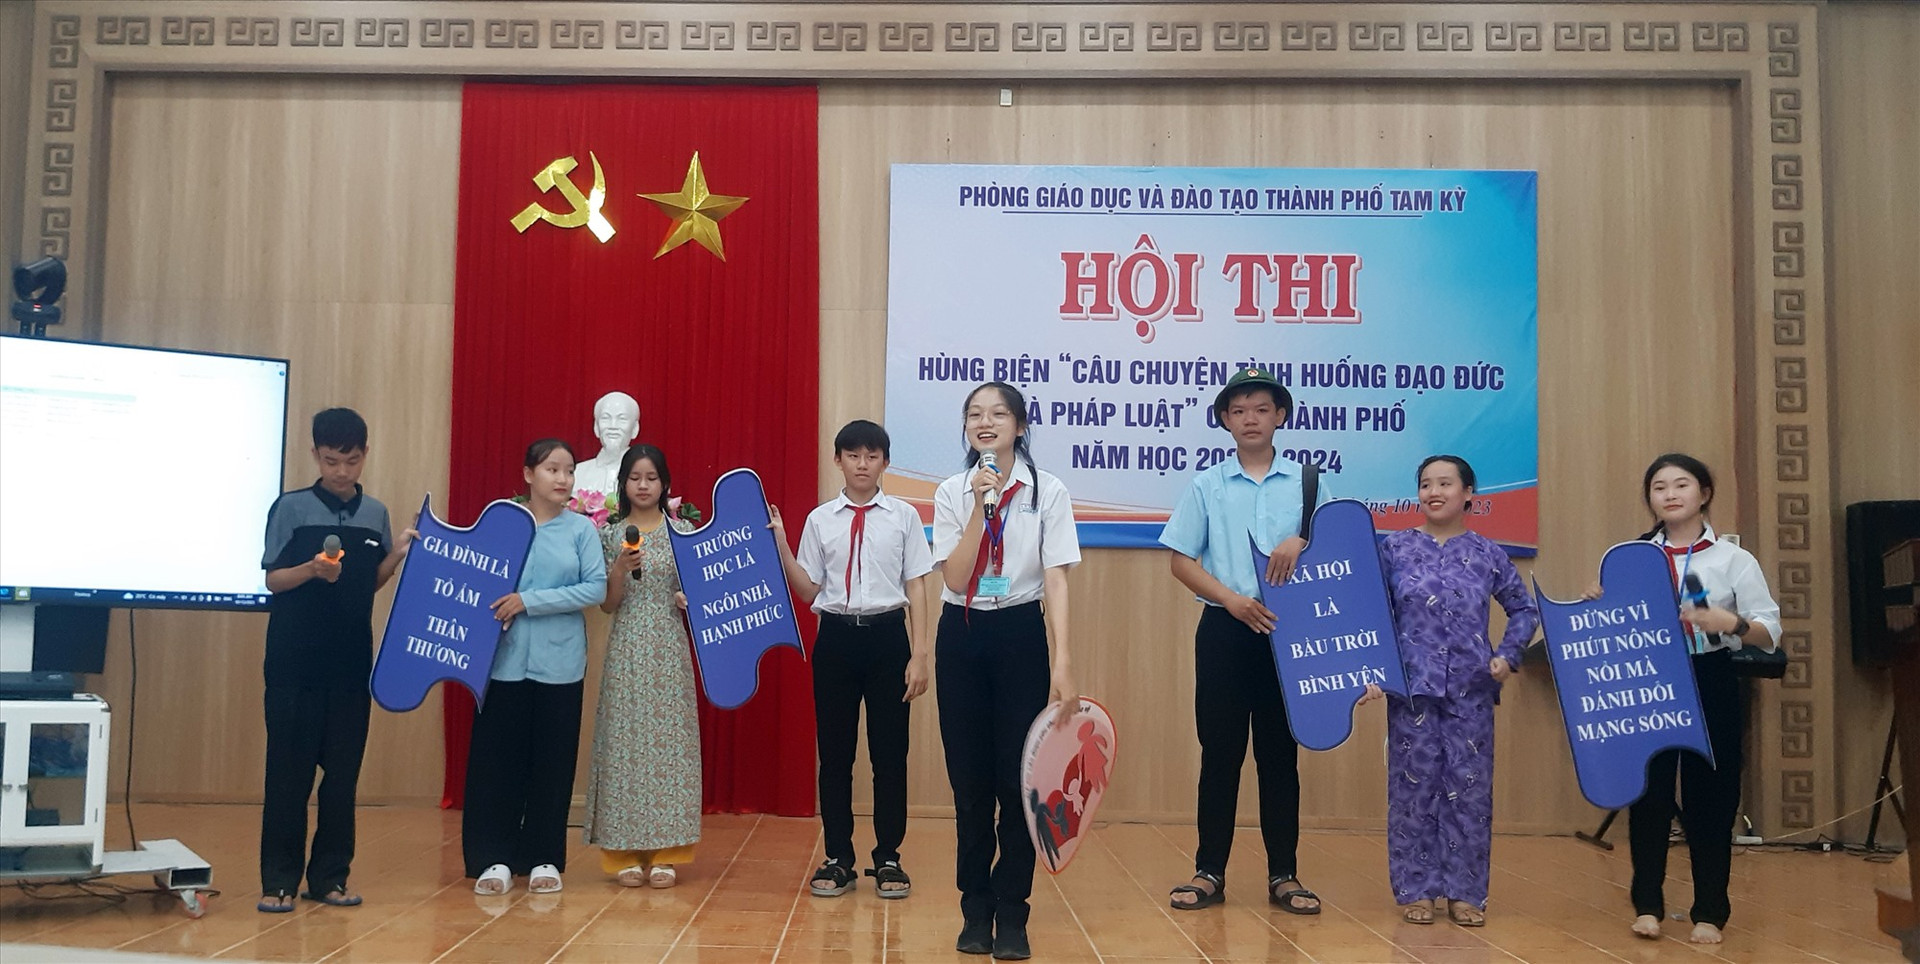 Thông điệp mang đến hội thi của Trường THCS Lê Lợi.